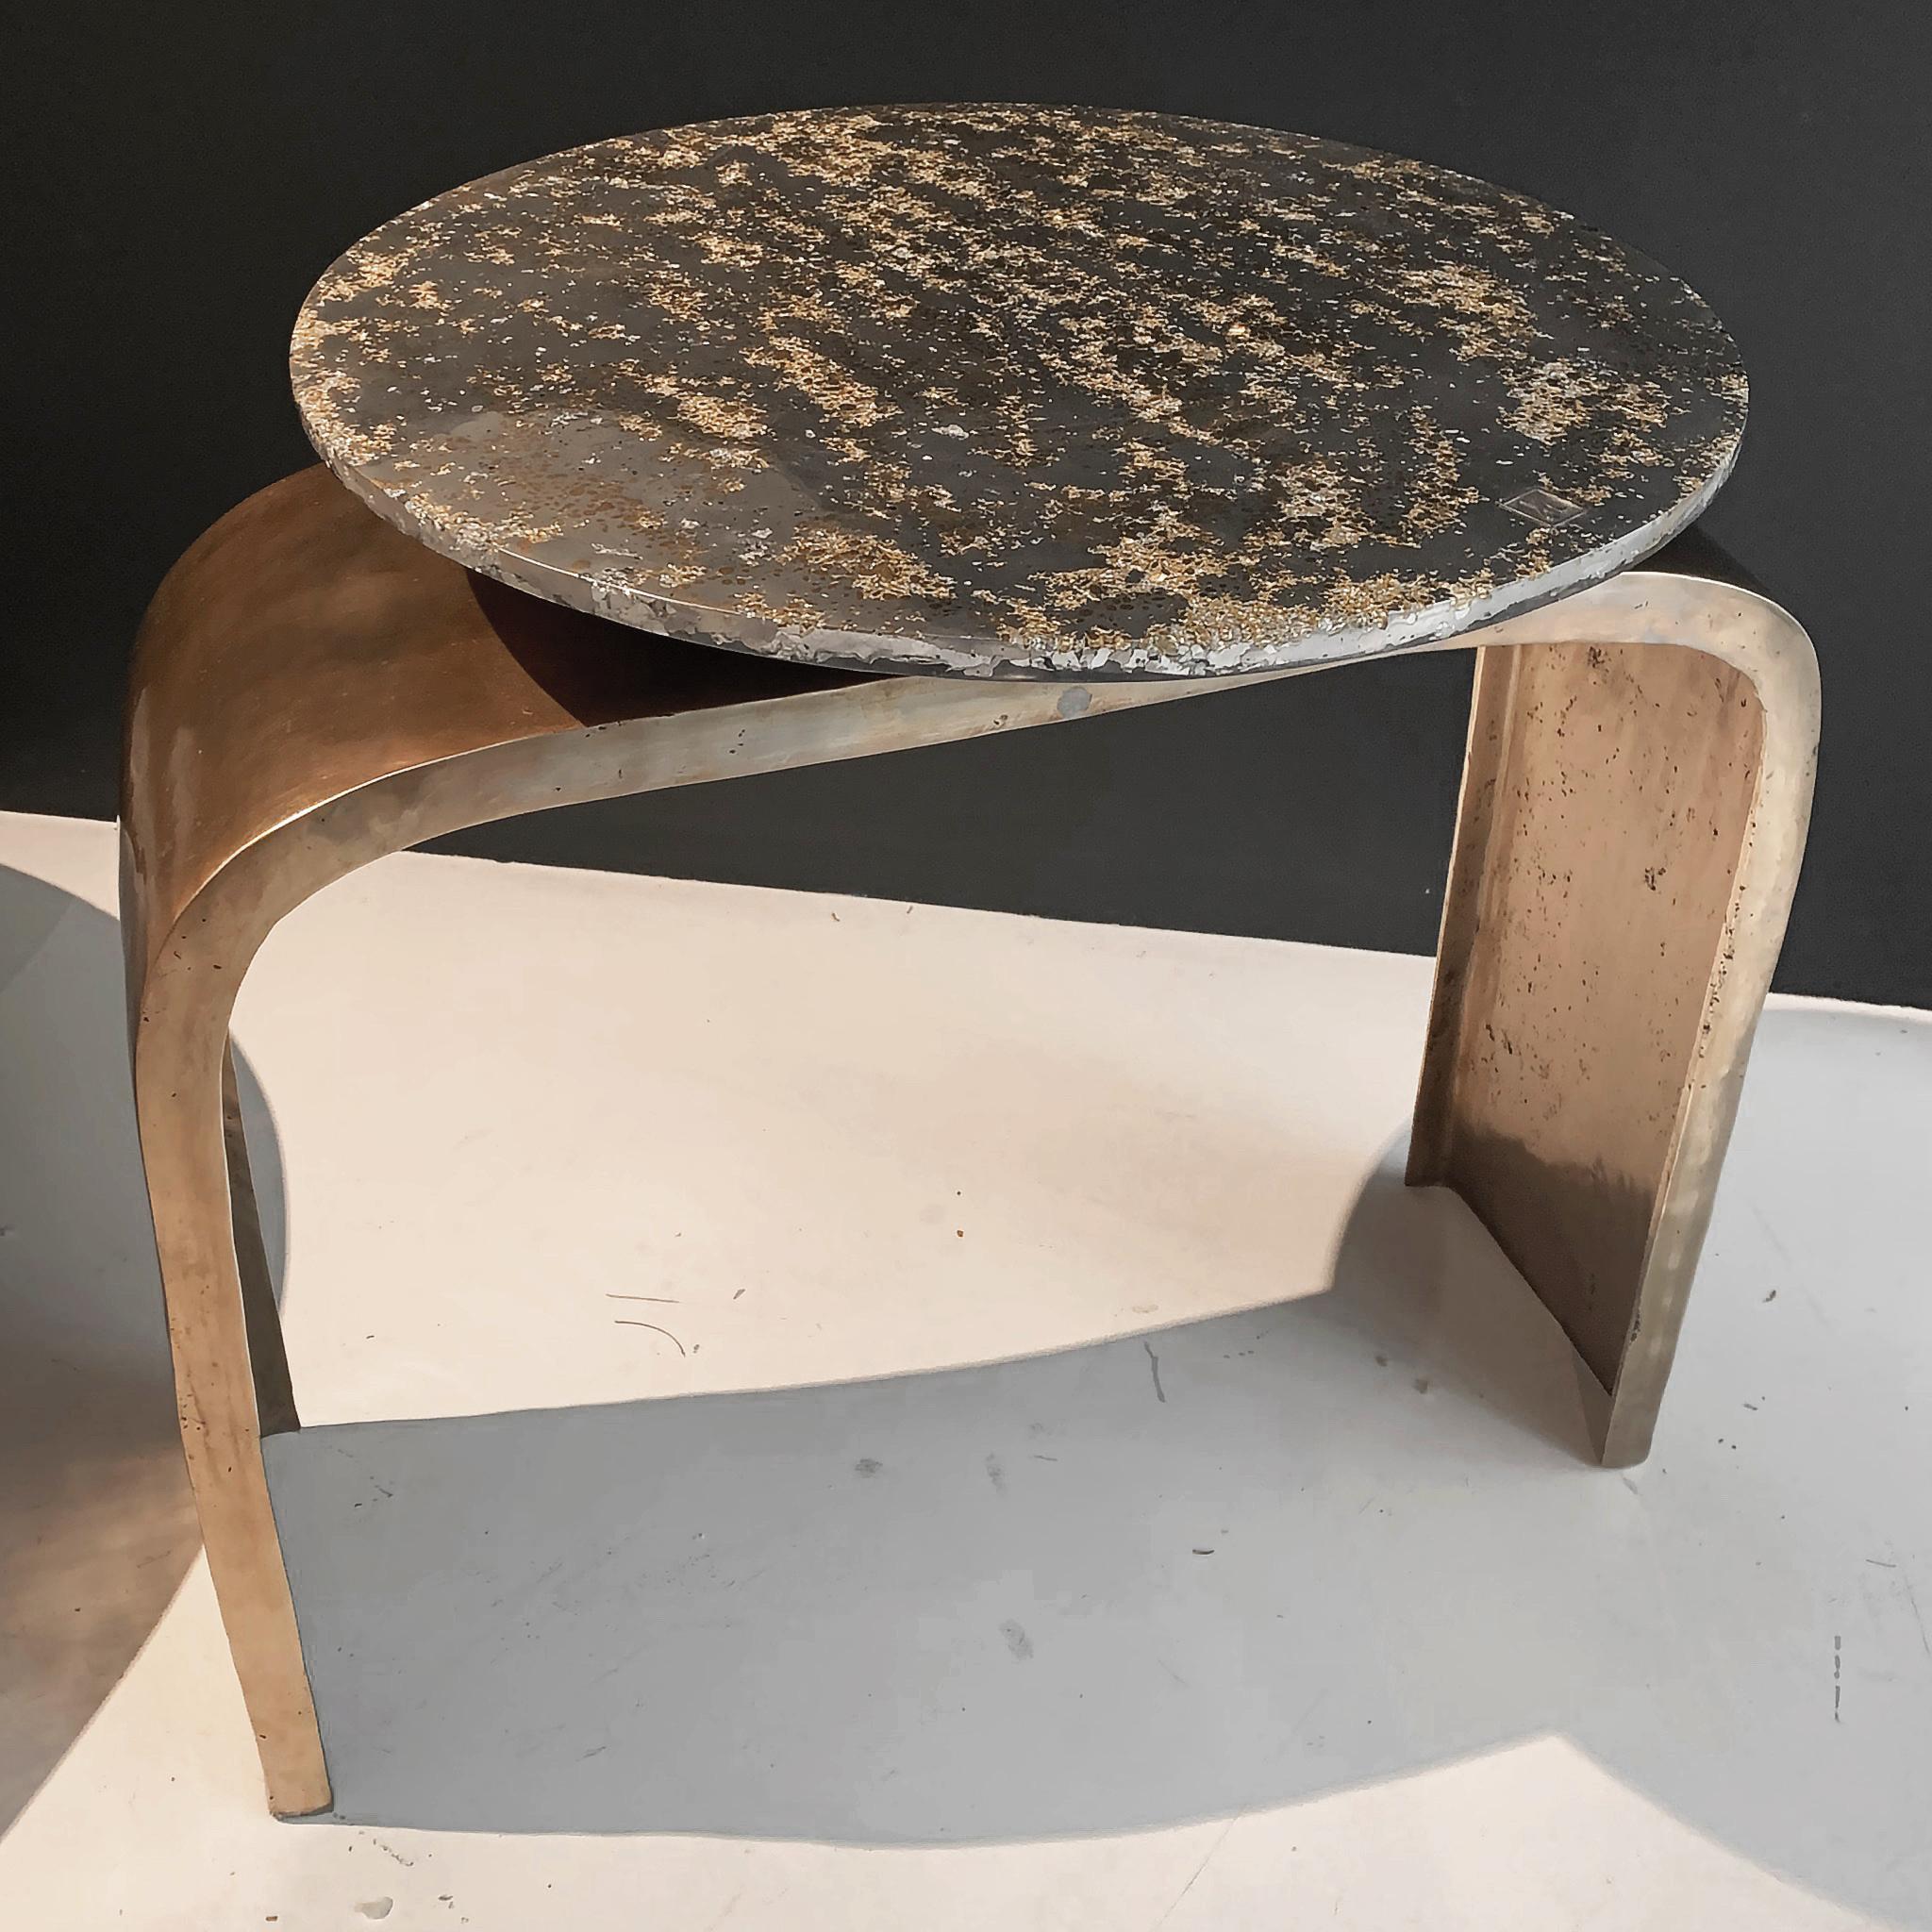 Beine aus Bronze auf Bestellung, mit gewünschter Patina. Top auf Lager: Dieser zeitgenössische Tisch ist ein Einzelstück, das von Xavier Lavergne entworfen wurde und aus geschmolzenem Zinn mit Messingmaserung besteht, das in Harz eingebettet und wie